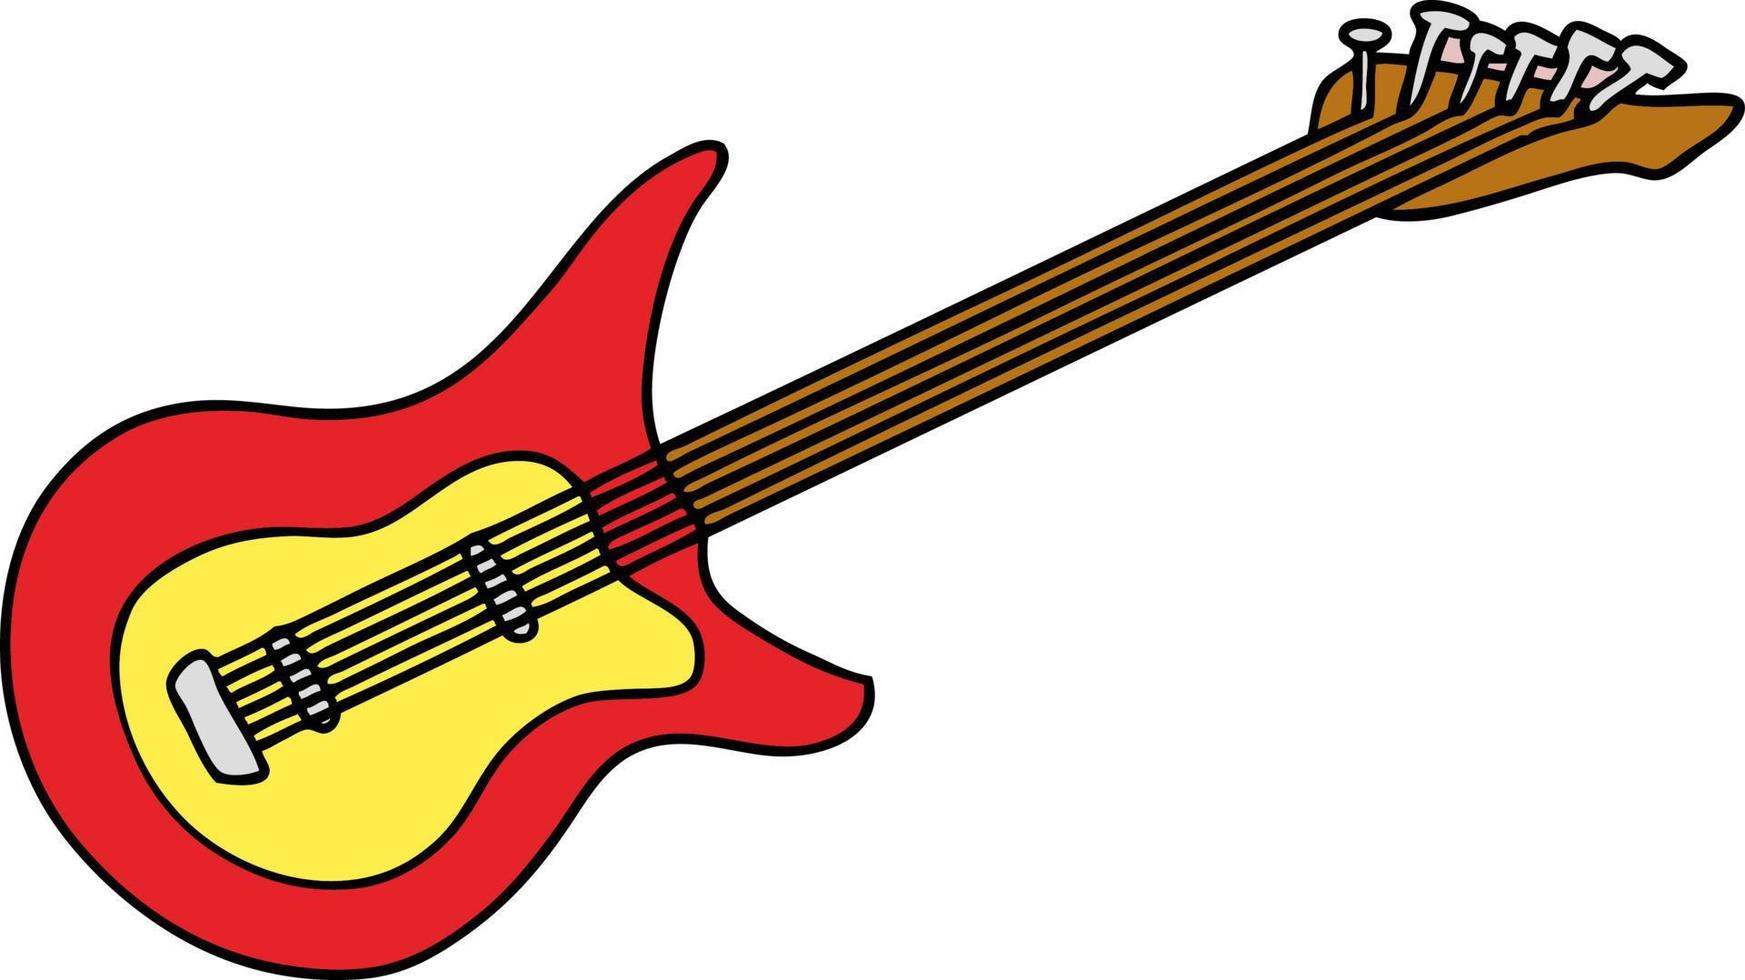 tecknad doodle av en gitarr vektor